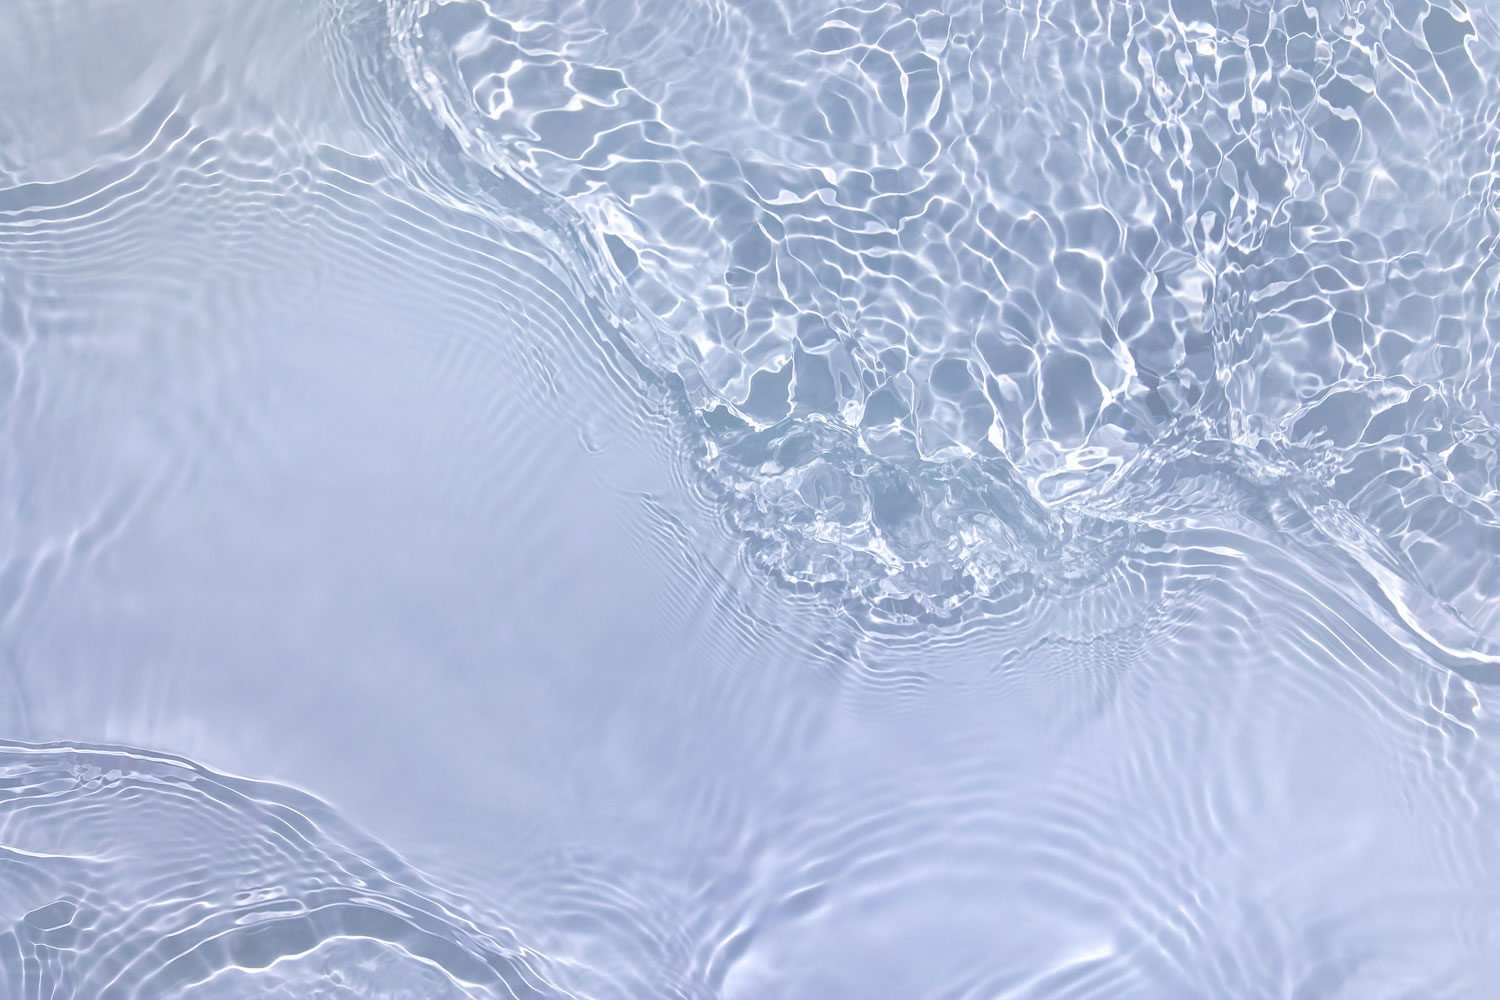 Ljus pastellblå transparent klar vattenytestruktur med krusningar, stänk och vågor i solljus